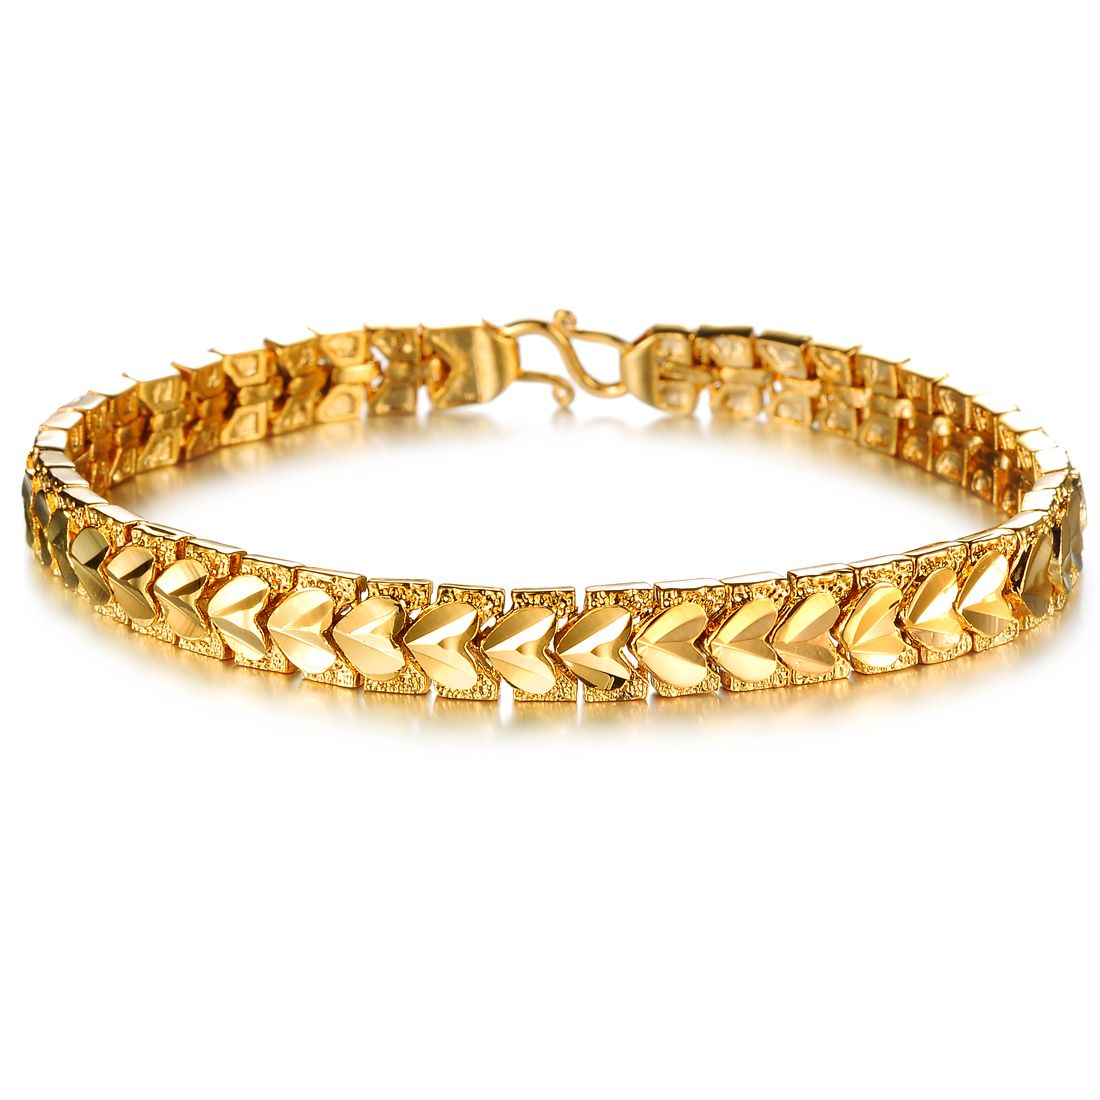 Il nuovo braccialetto del braccialetto delle donne/uomini dei monili placcato oro di modo di arrivo non sbiadisce mai